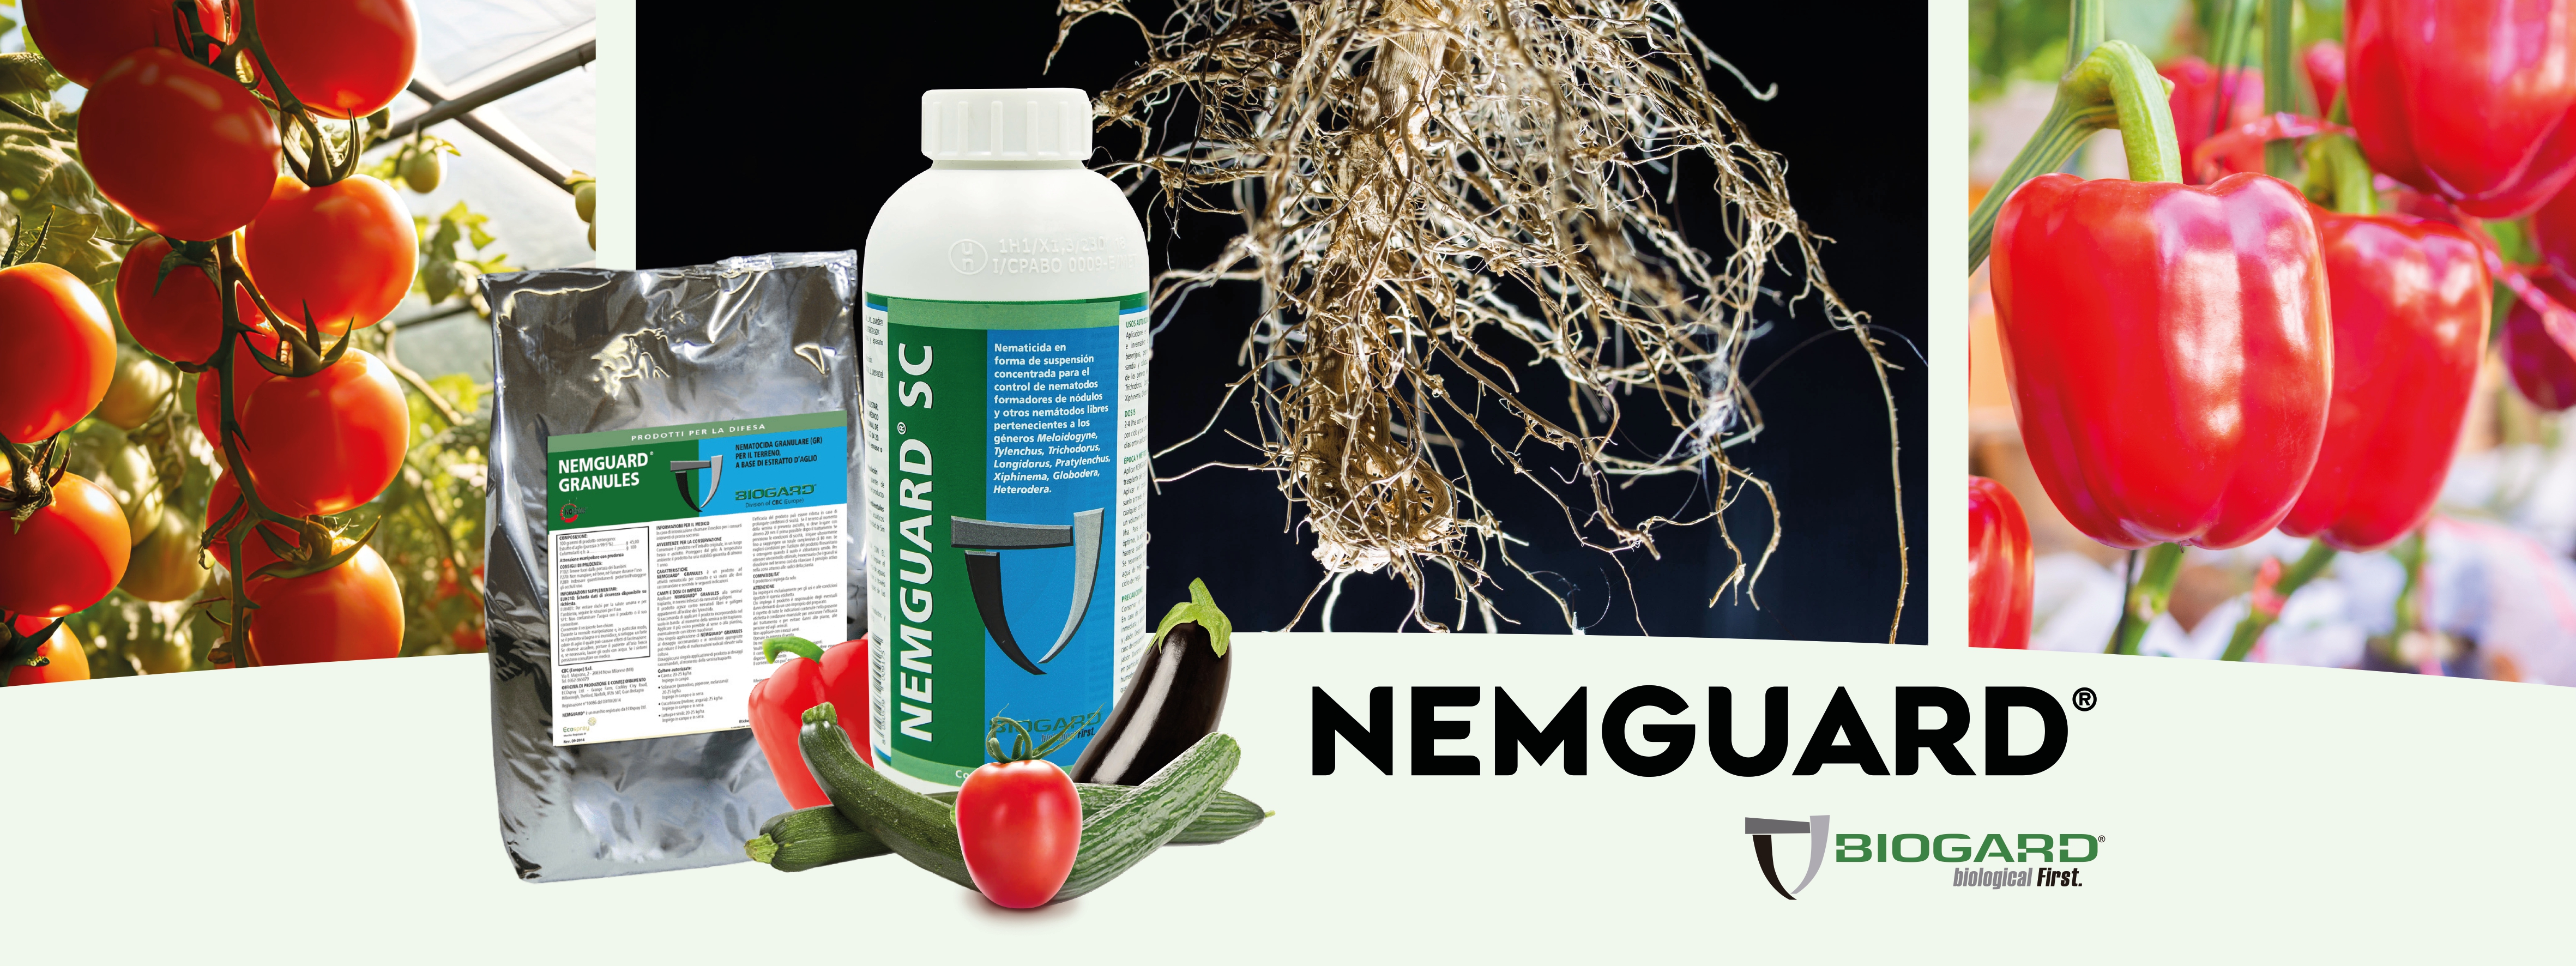 Nemguard SC, la solucin eficaz para controlar nematodos de Biogard